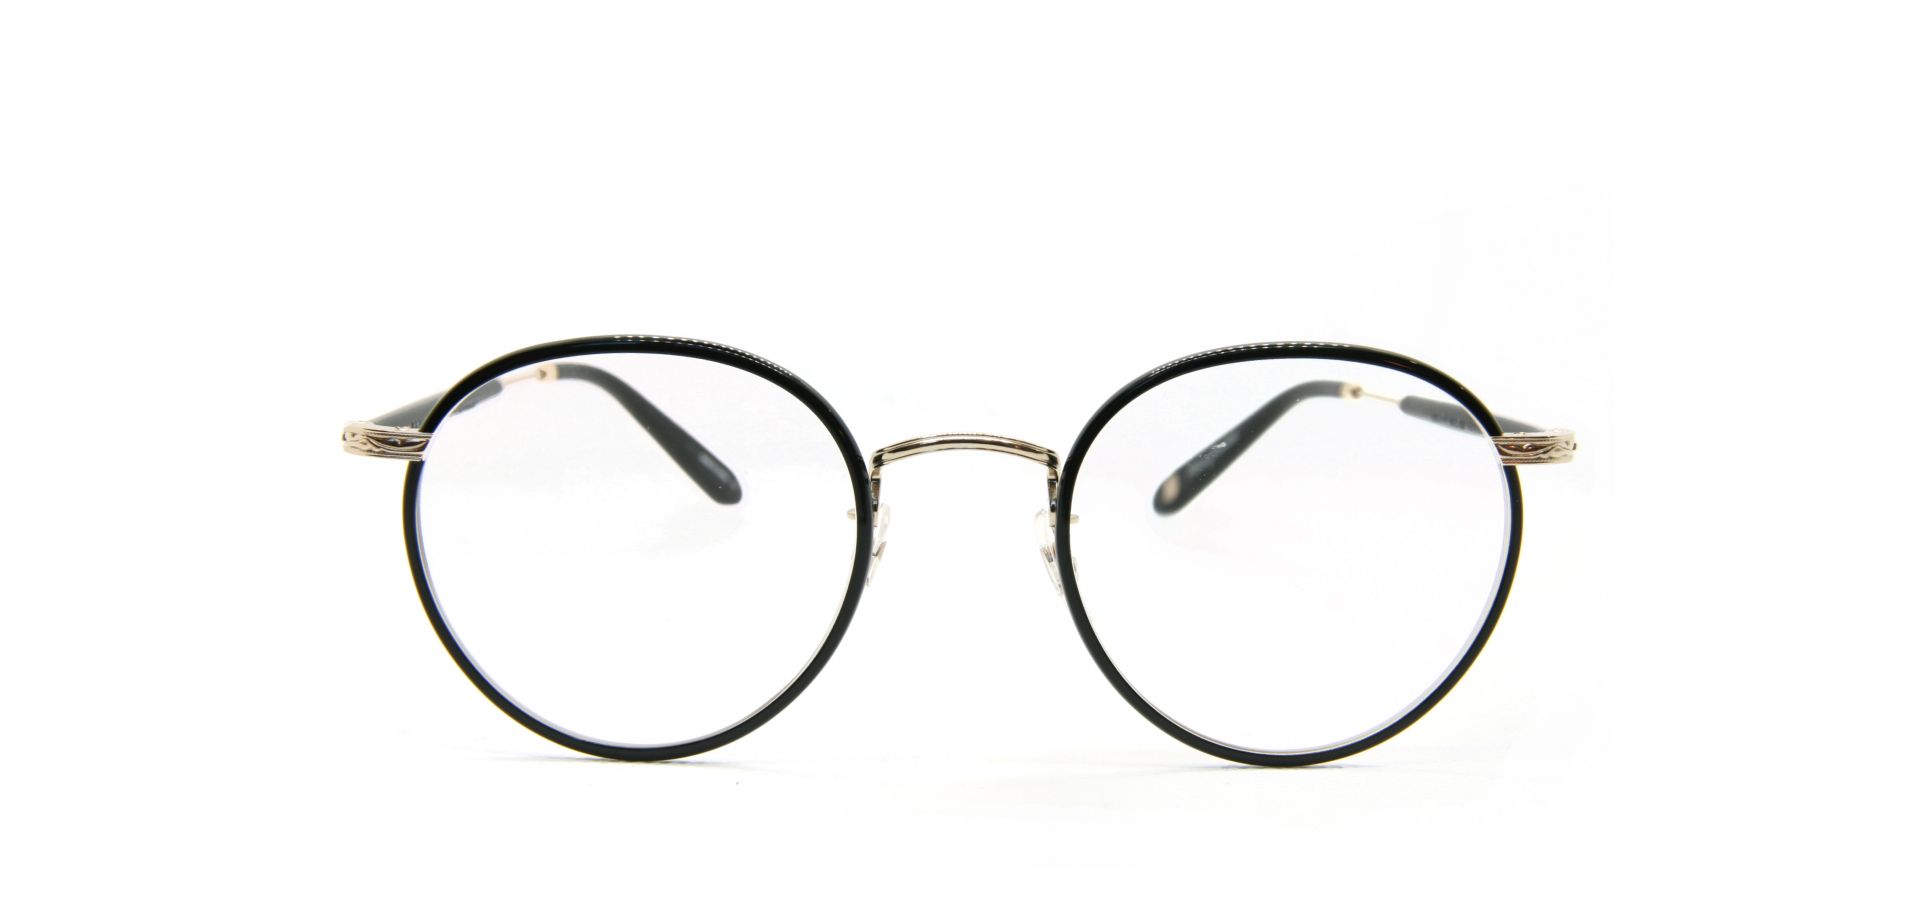 Korekcijska očala Garrett Leight WILSON 49 BLACK GOLD BLACK: Velikost: 49/22, Spol: unisex, Material: acetat/kovinska